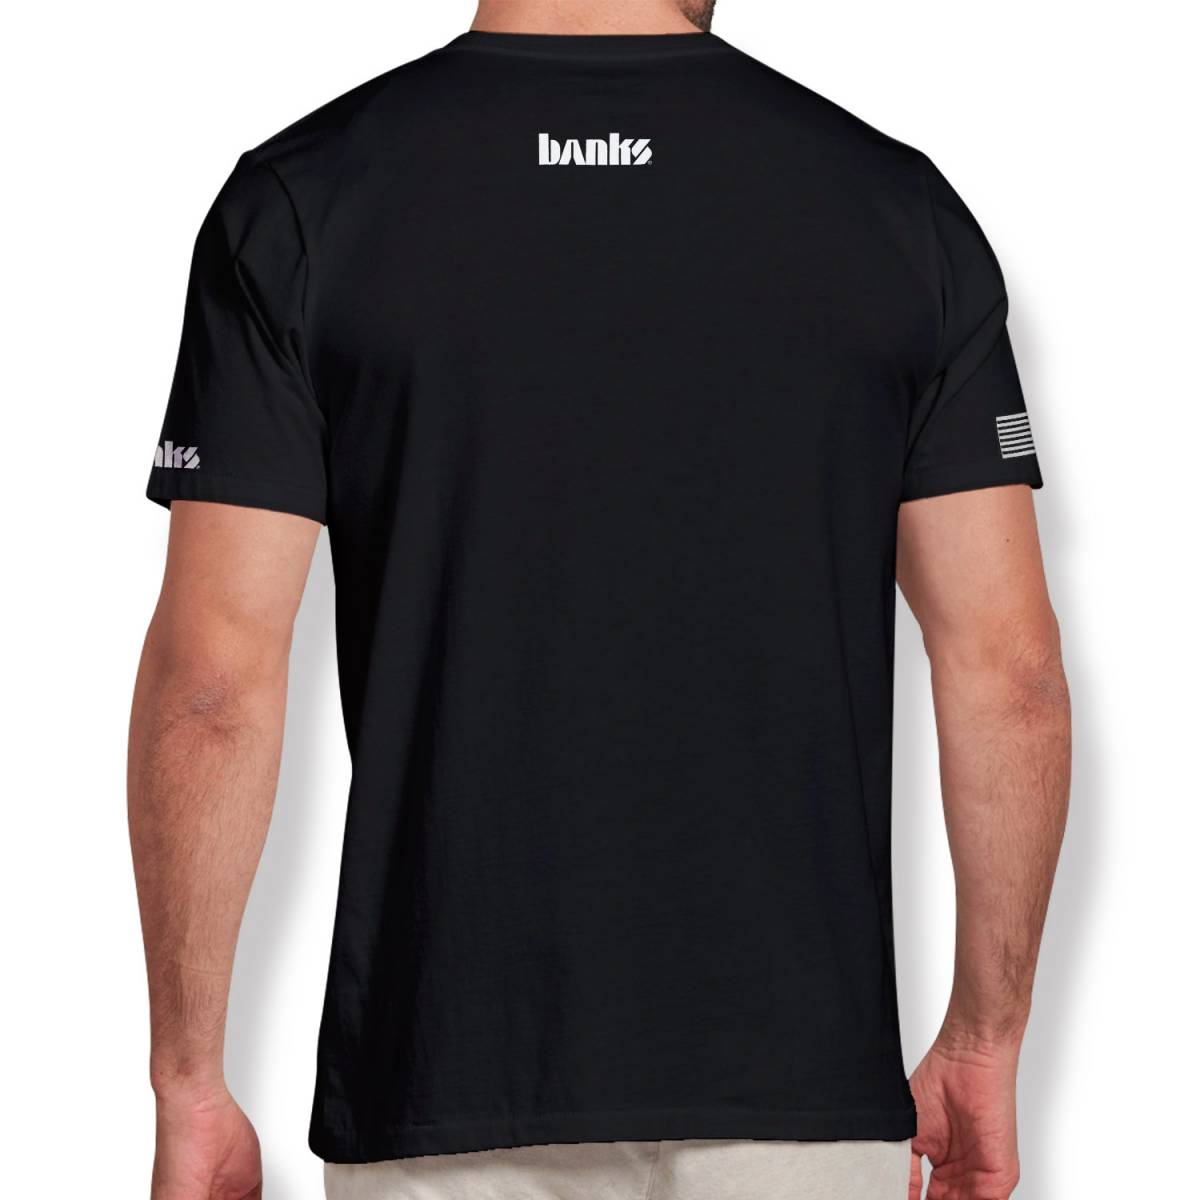 Banks Shirt Back Side 96263